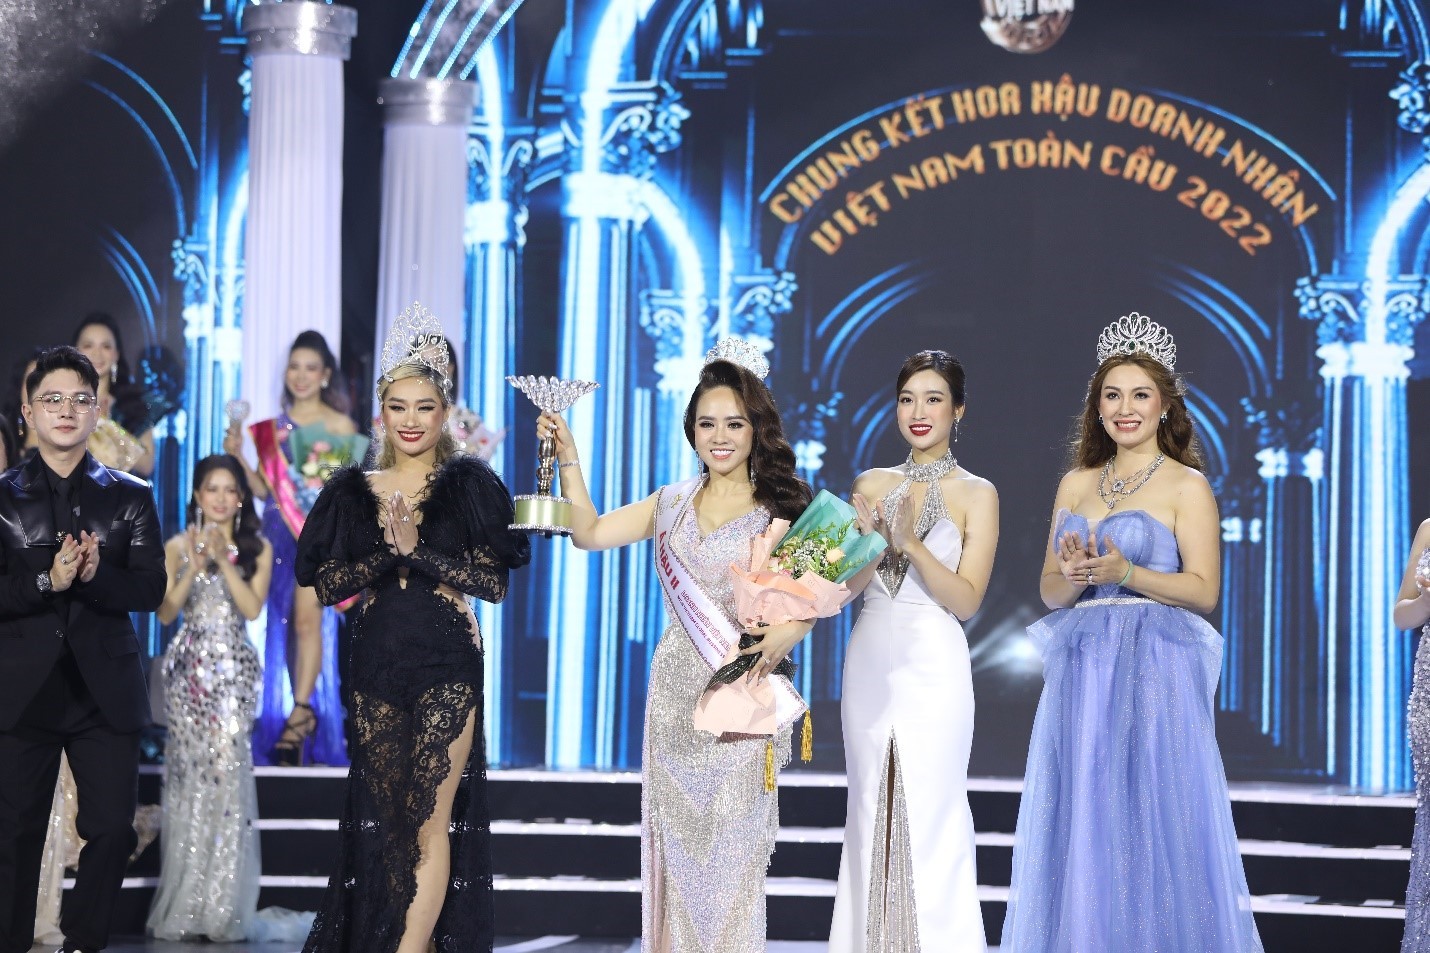 Doanh nhân Lê Thị Hồng Thắm tân Á hậu 2 cuộc thi Hoa hậu Doanh nhân Việt Nam Toàn cầu 2022